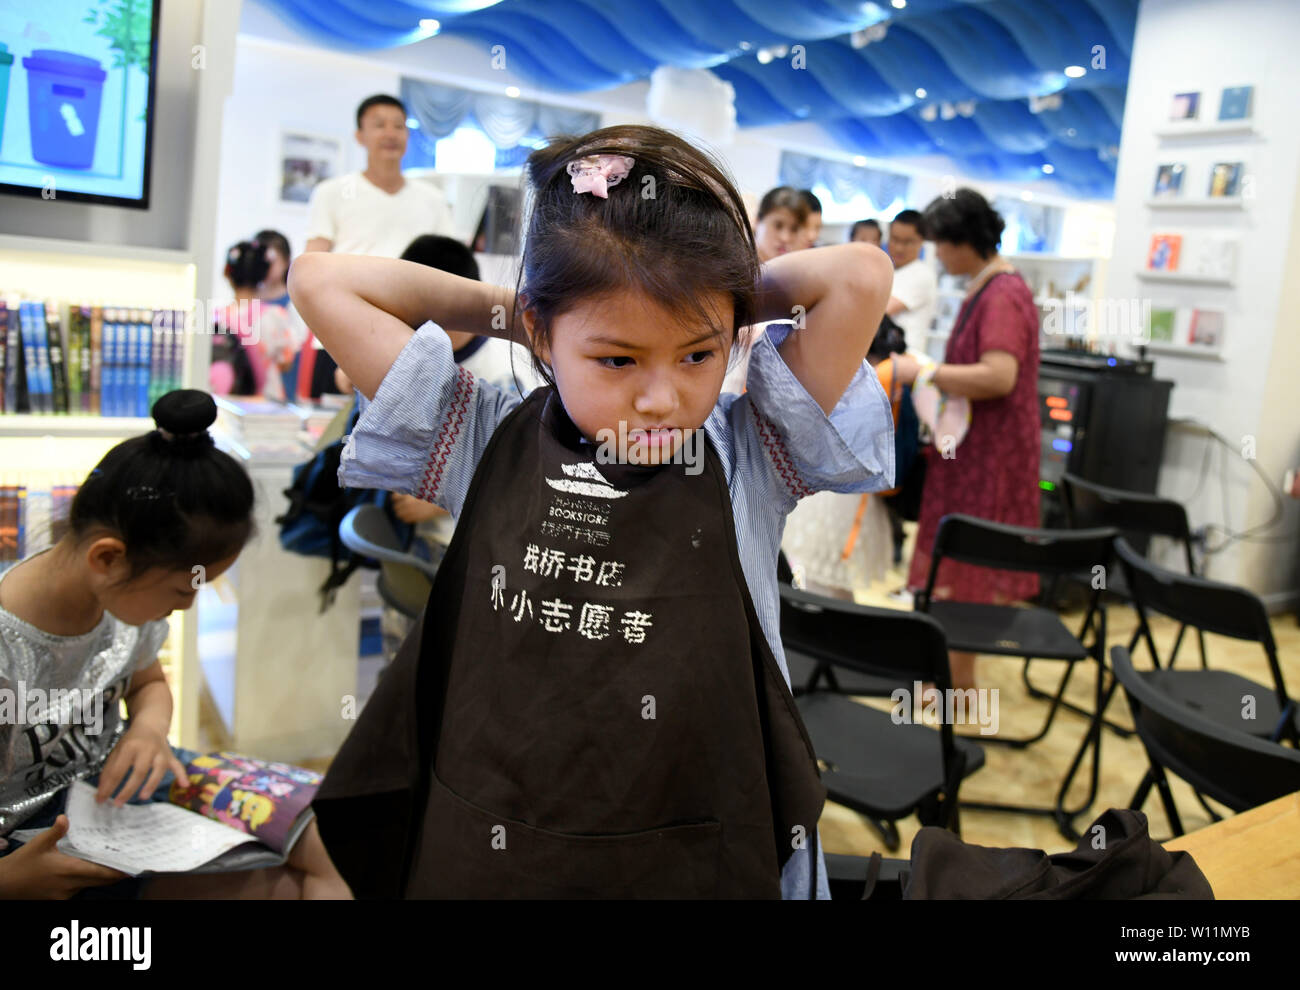 (190629) -- QINGDAO, Giugno 29, 2019 (Xinhua) -- un giovane volontario è pronta per lavorare a Zhanqiao Bookstore di Qingdao, est della Cina di Shandong, Giugno 29, 2019. Più di trenta ragazzi erano addestrati come volontari in Zhanqiao Bookstore. Durante le vacanze estive, essi saranno impegnati in lettori di orientamento, libri di ordinamento, il benessere pubblico attività e altri lavori all'interno delle loro capacità. In ritorno, sono concesse priorità nel prendere i libri in prestito, con qualche dato a loro come doni. (Xinhua/Li Ziheng) Foto Stock